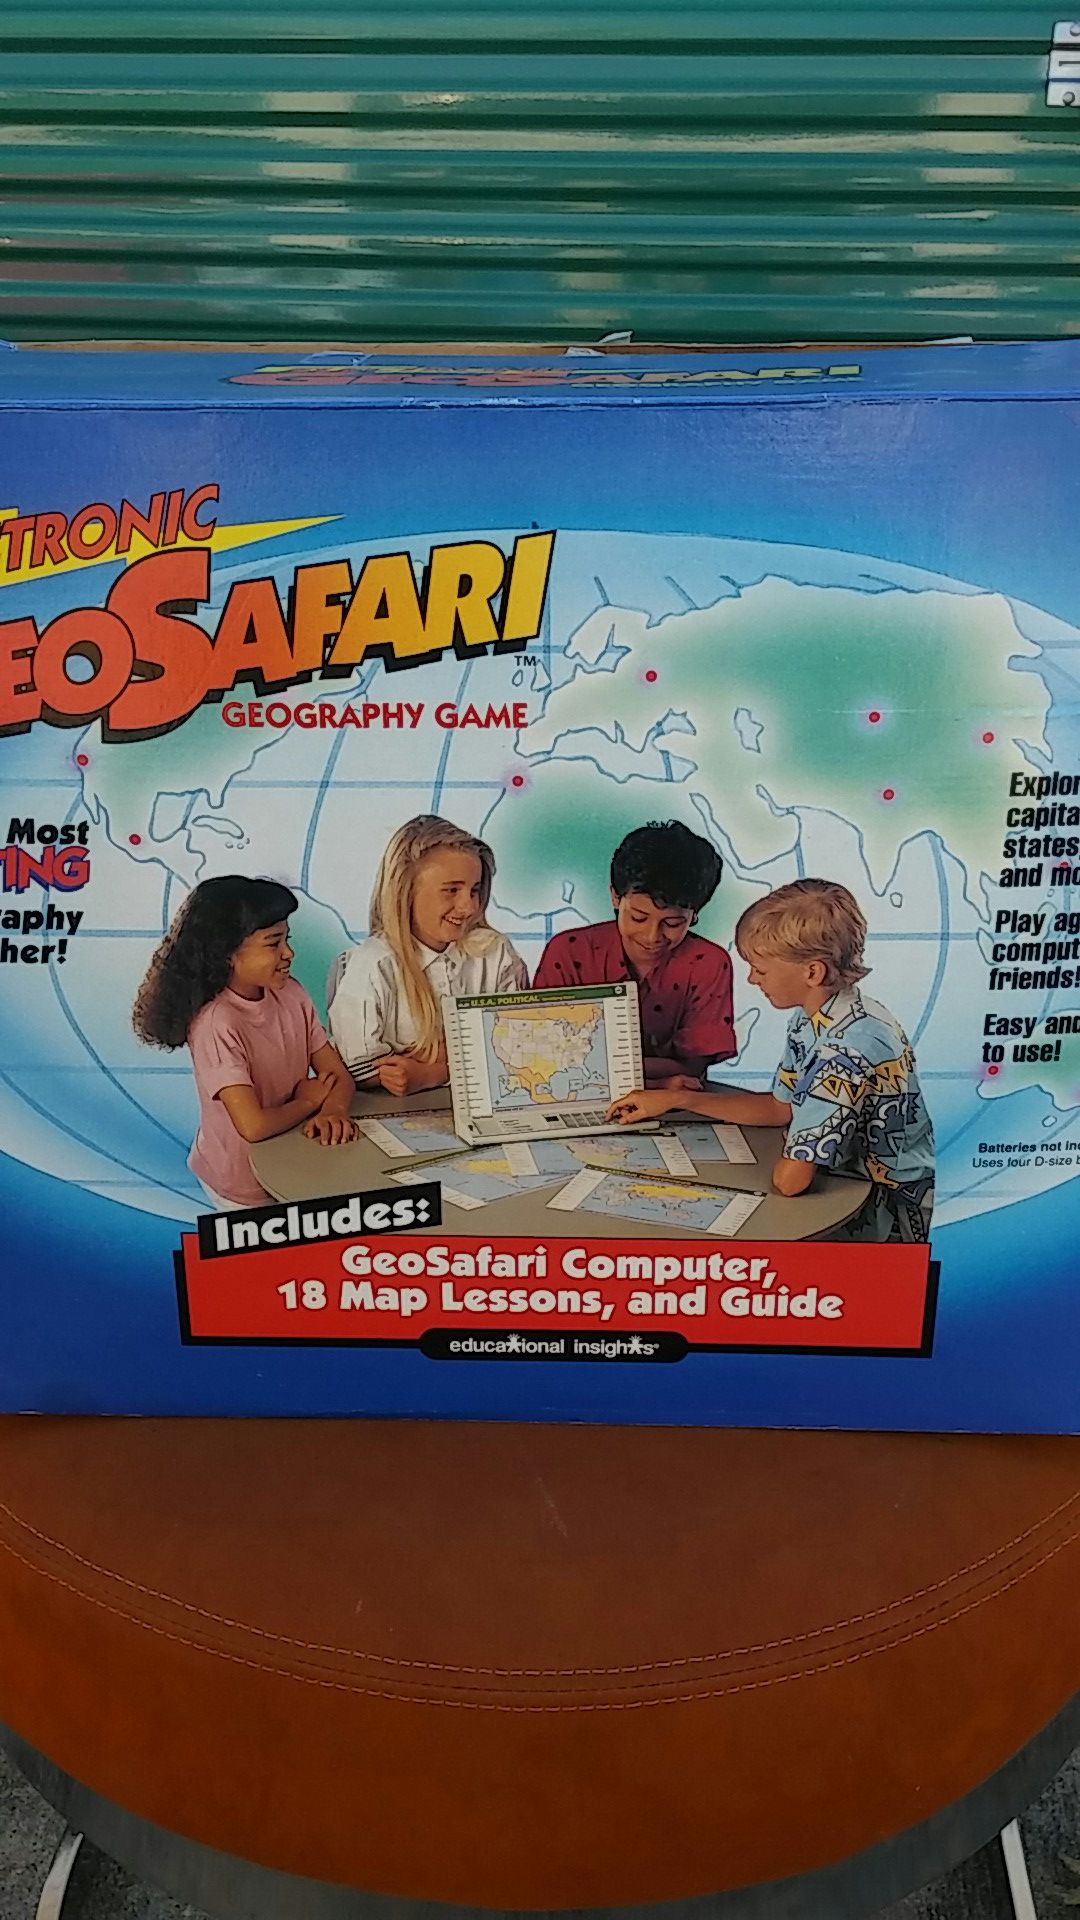 Electronic GeoSafari game for kids